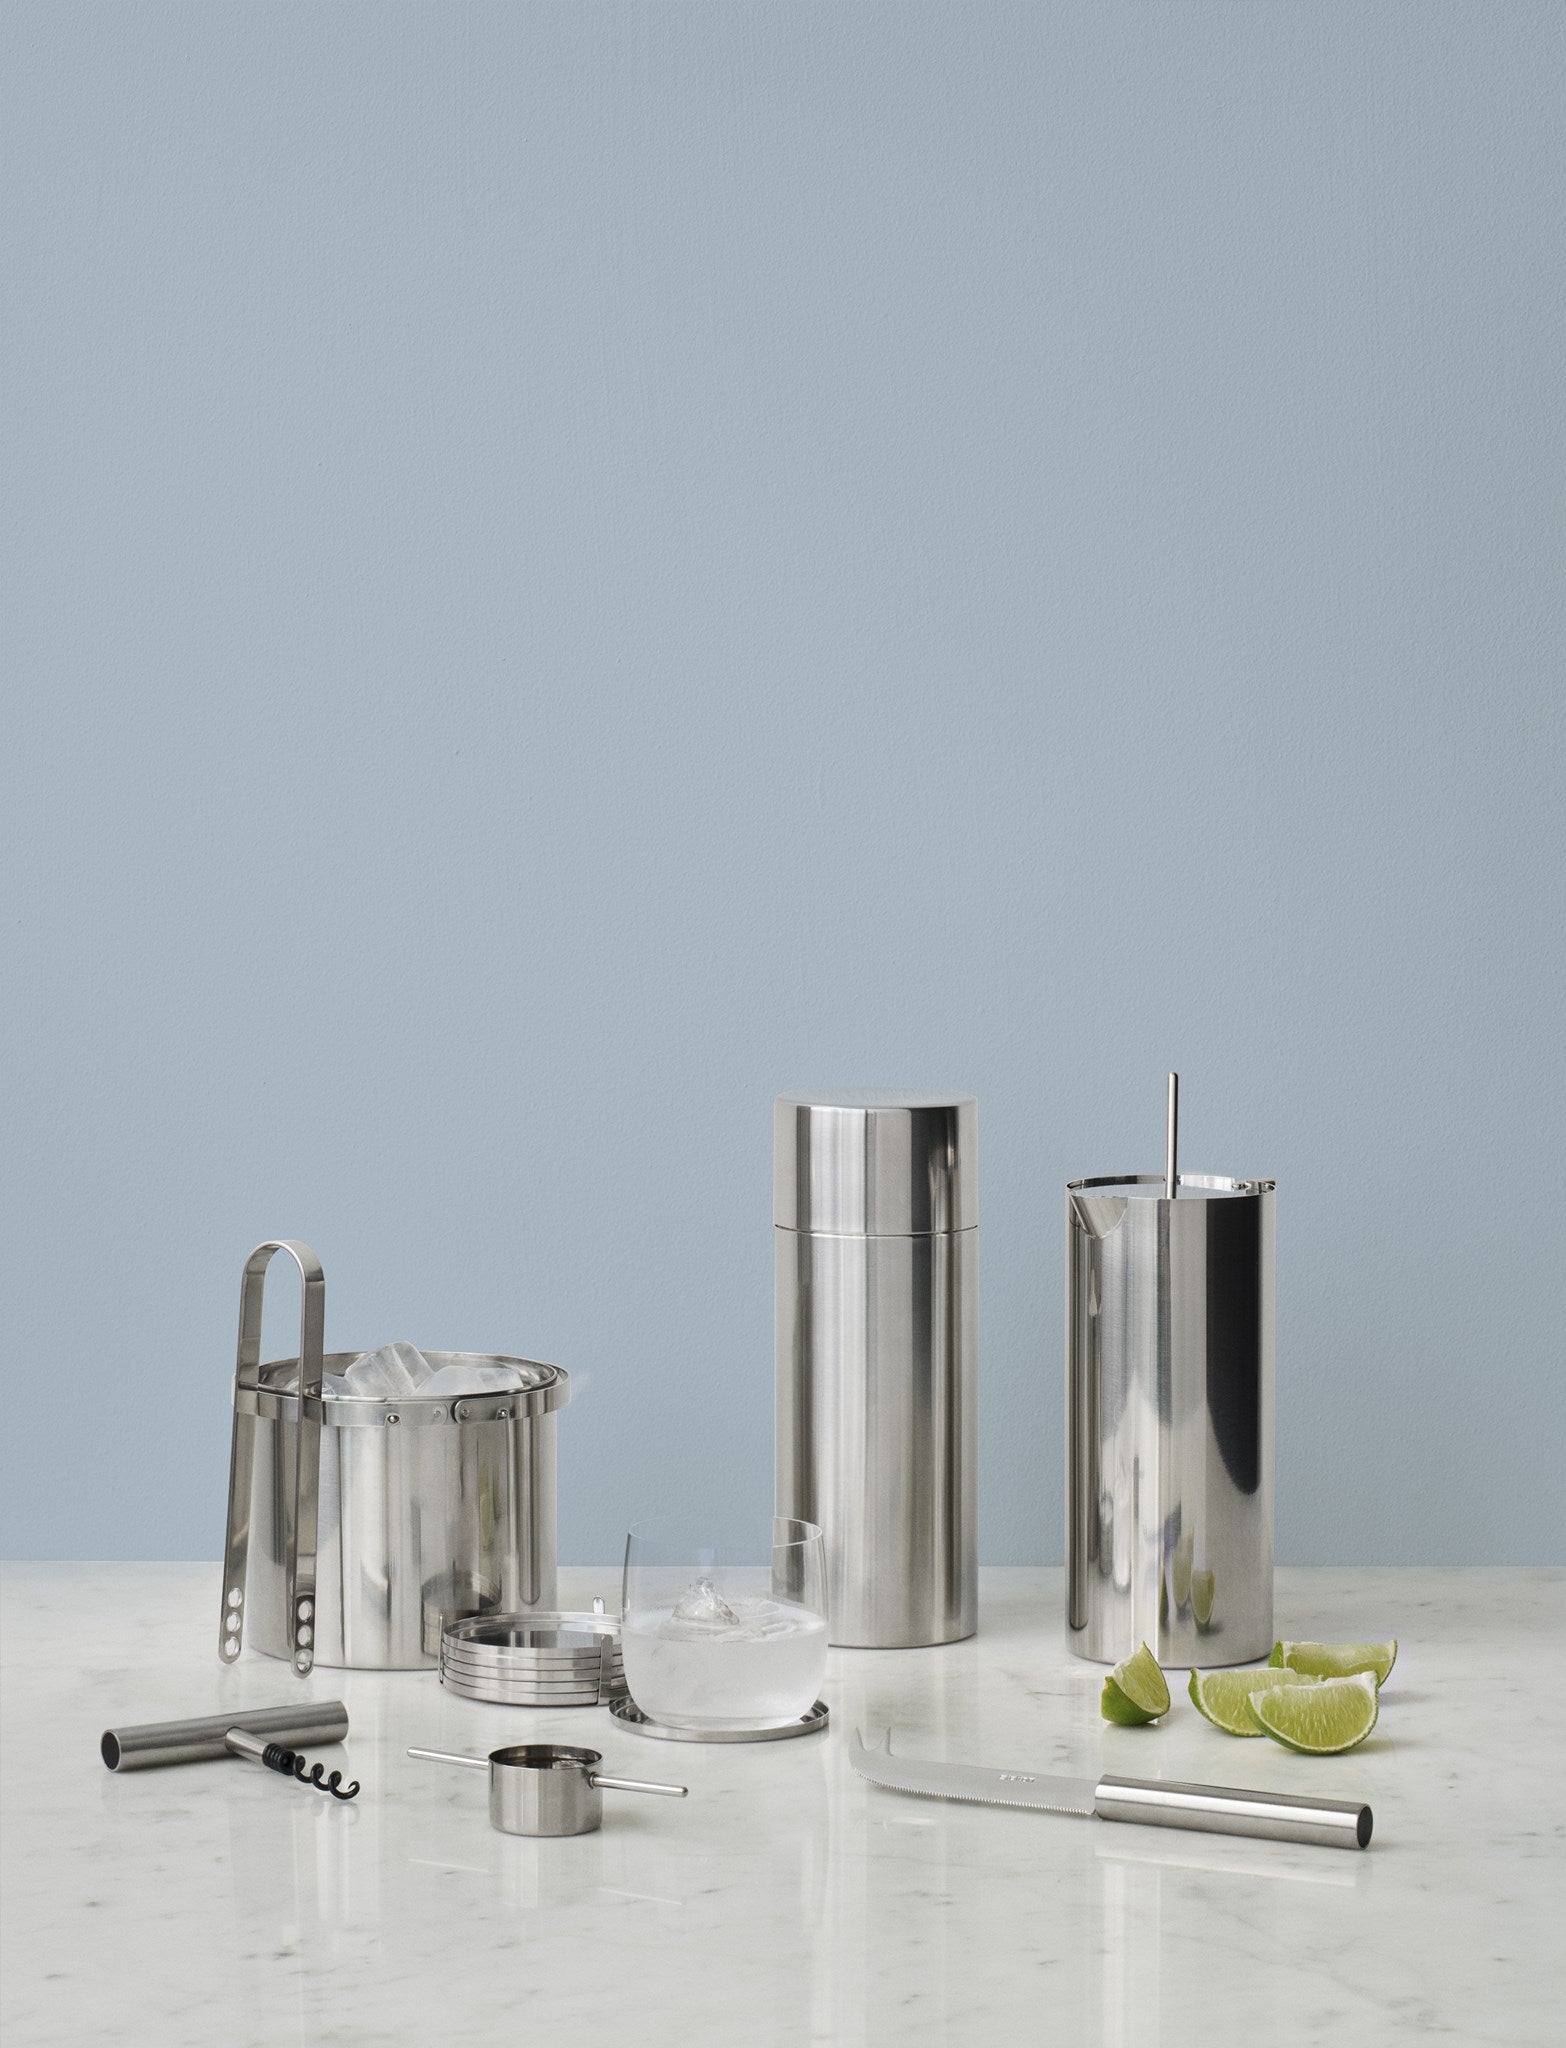 Stelton Arne Jacobsen Glass Brikke Ø 8,5 cm